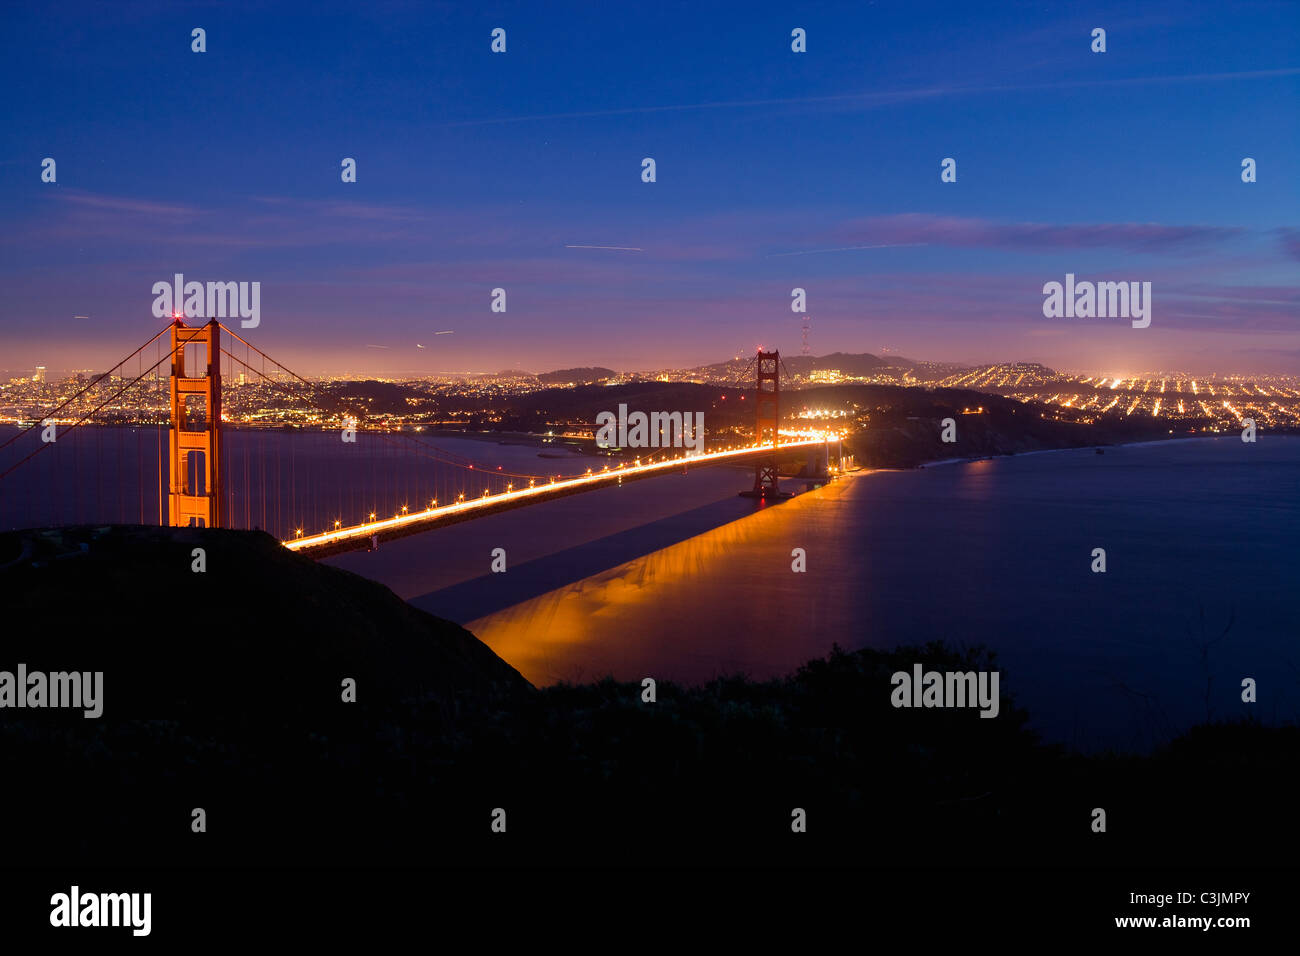 Etats Unis, San Francisco, ville avec Golden Gate Bridge Banque D'Images